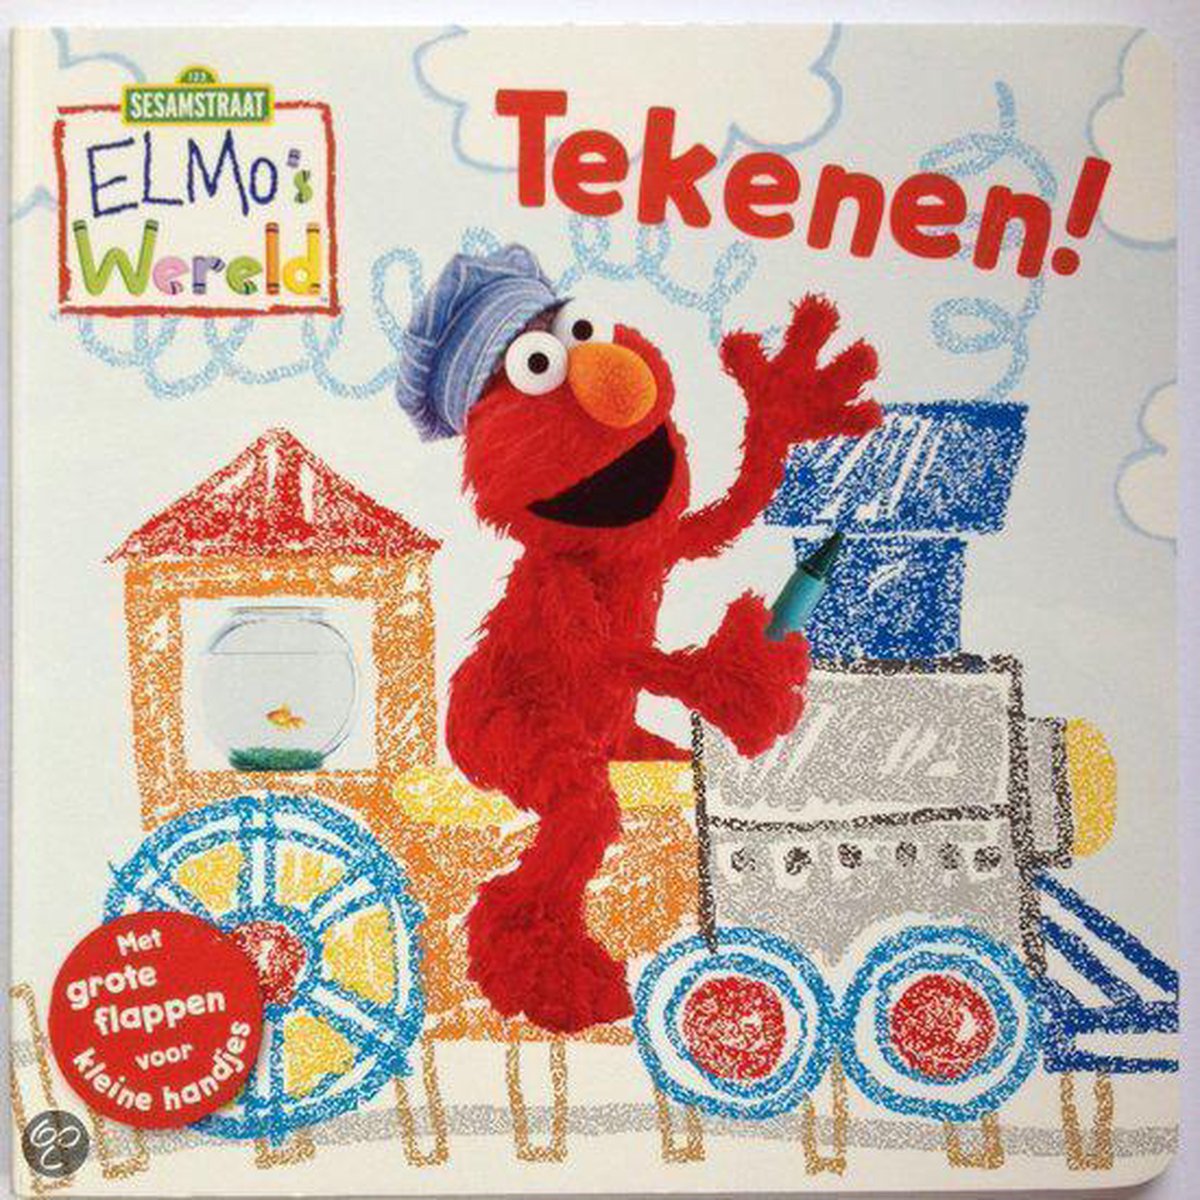 Tekenen! / Elmo's Wereld